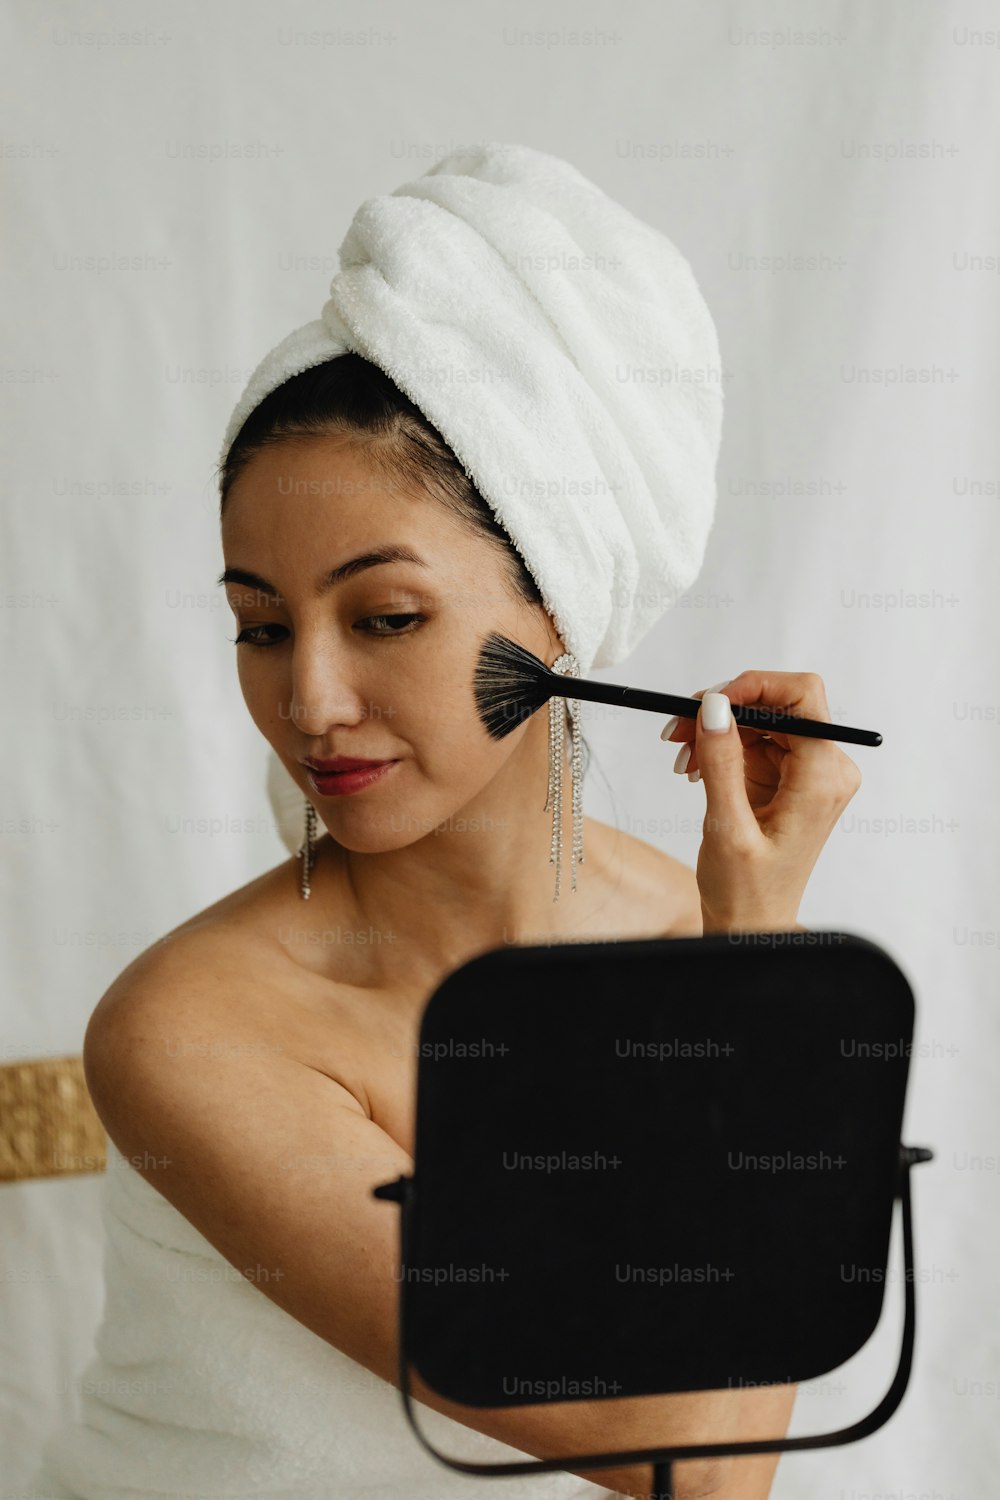 Eine Frau mit einem Handtuch auf dem Kopf bürstet ihr Gesicht mit einer Bürste